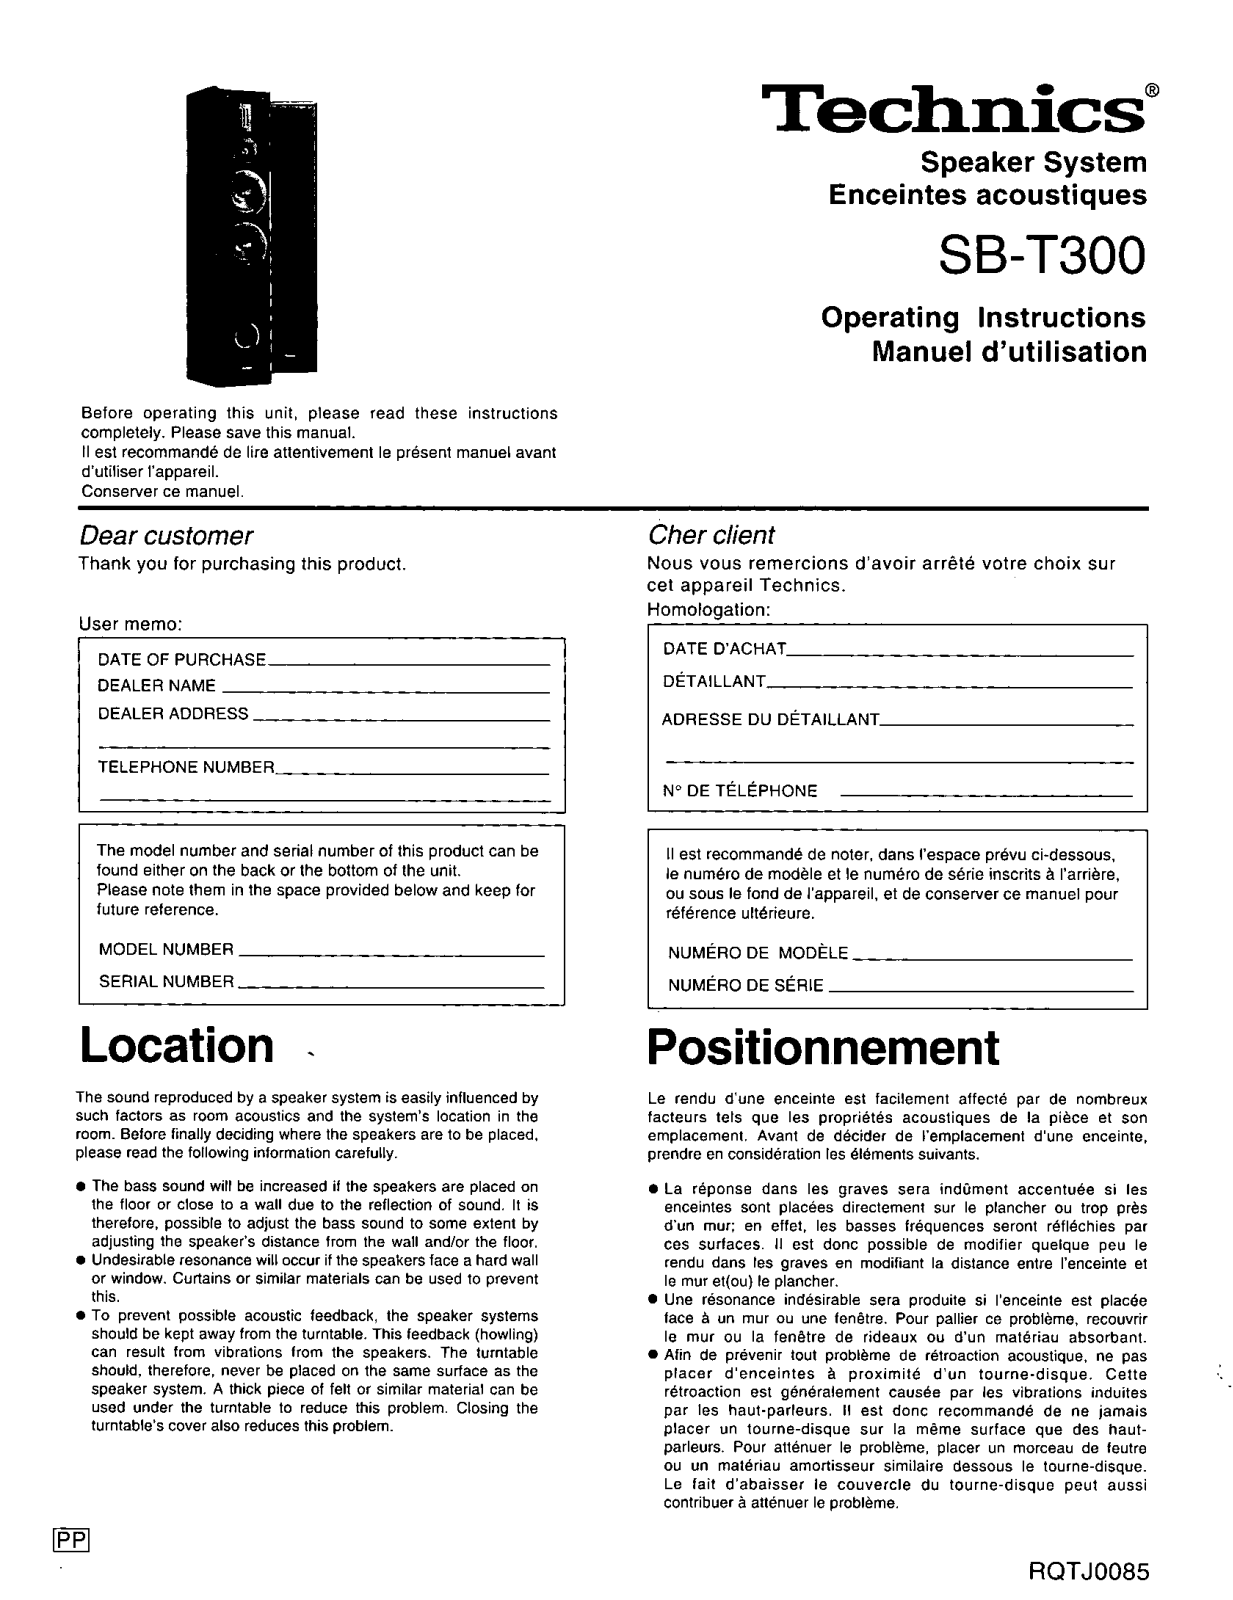 Panasonic SBT-300 Owners manual